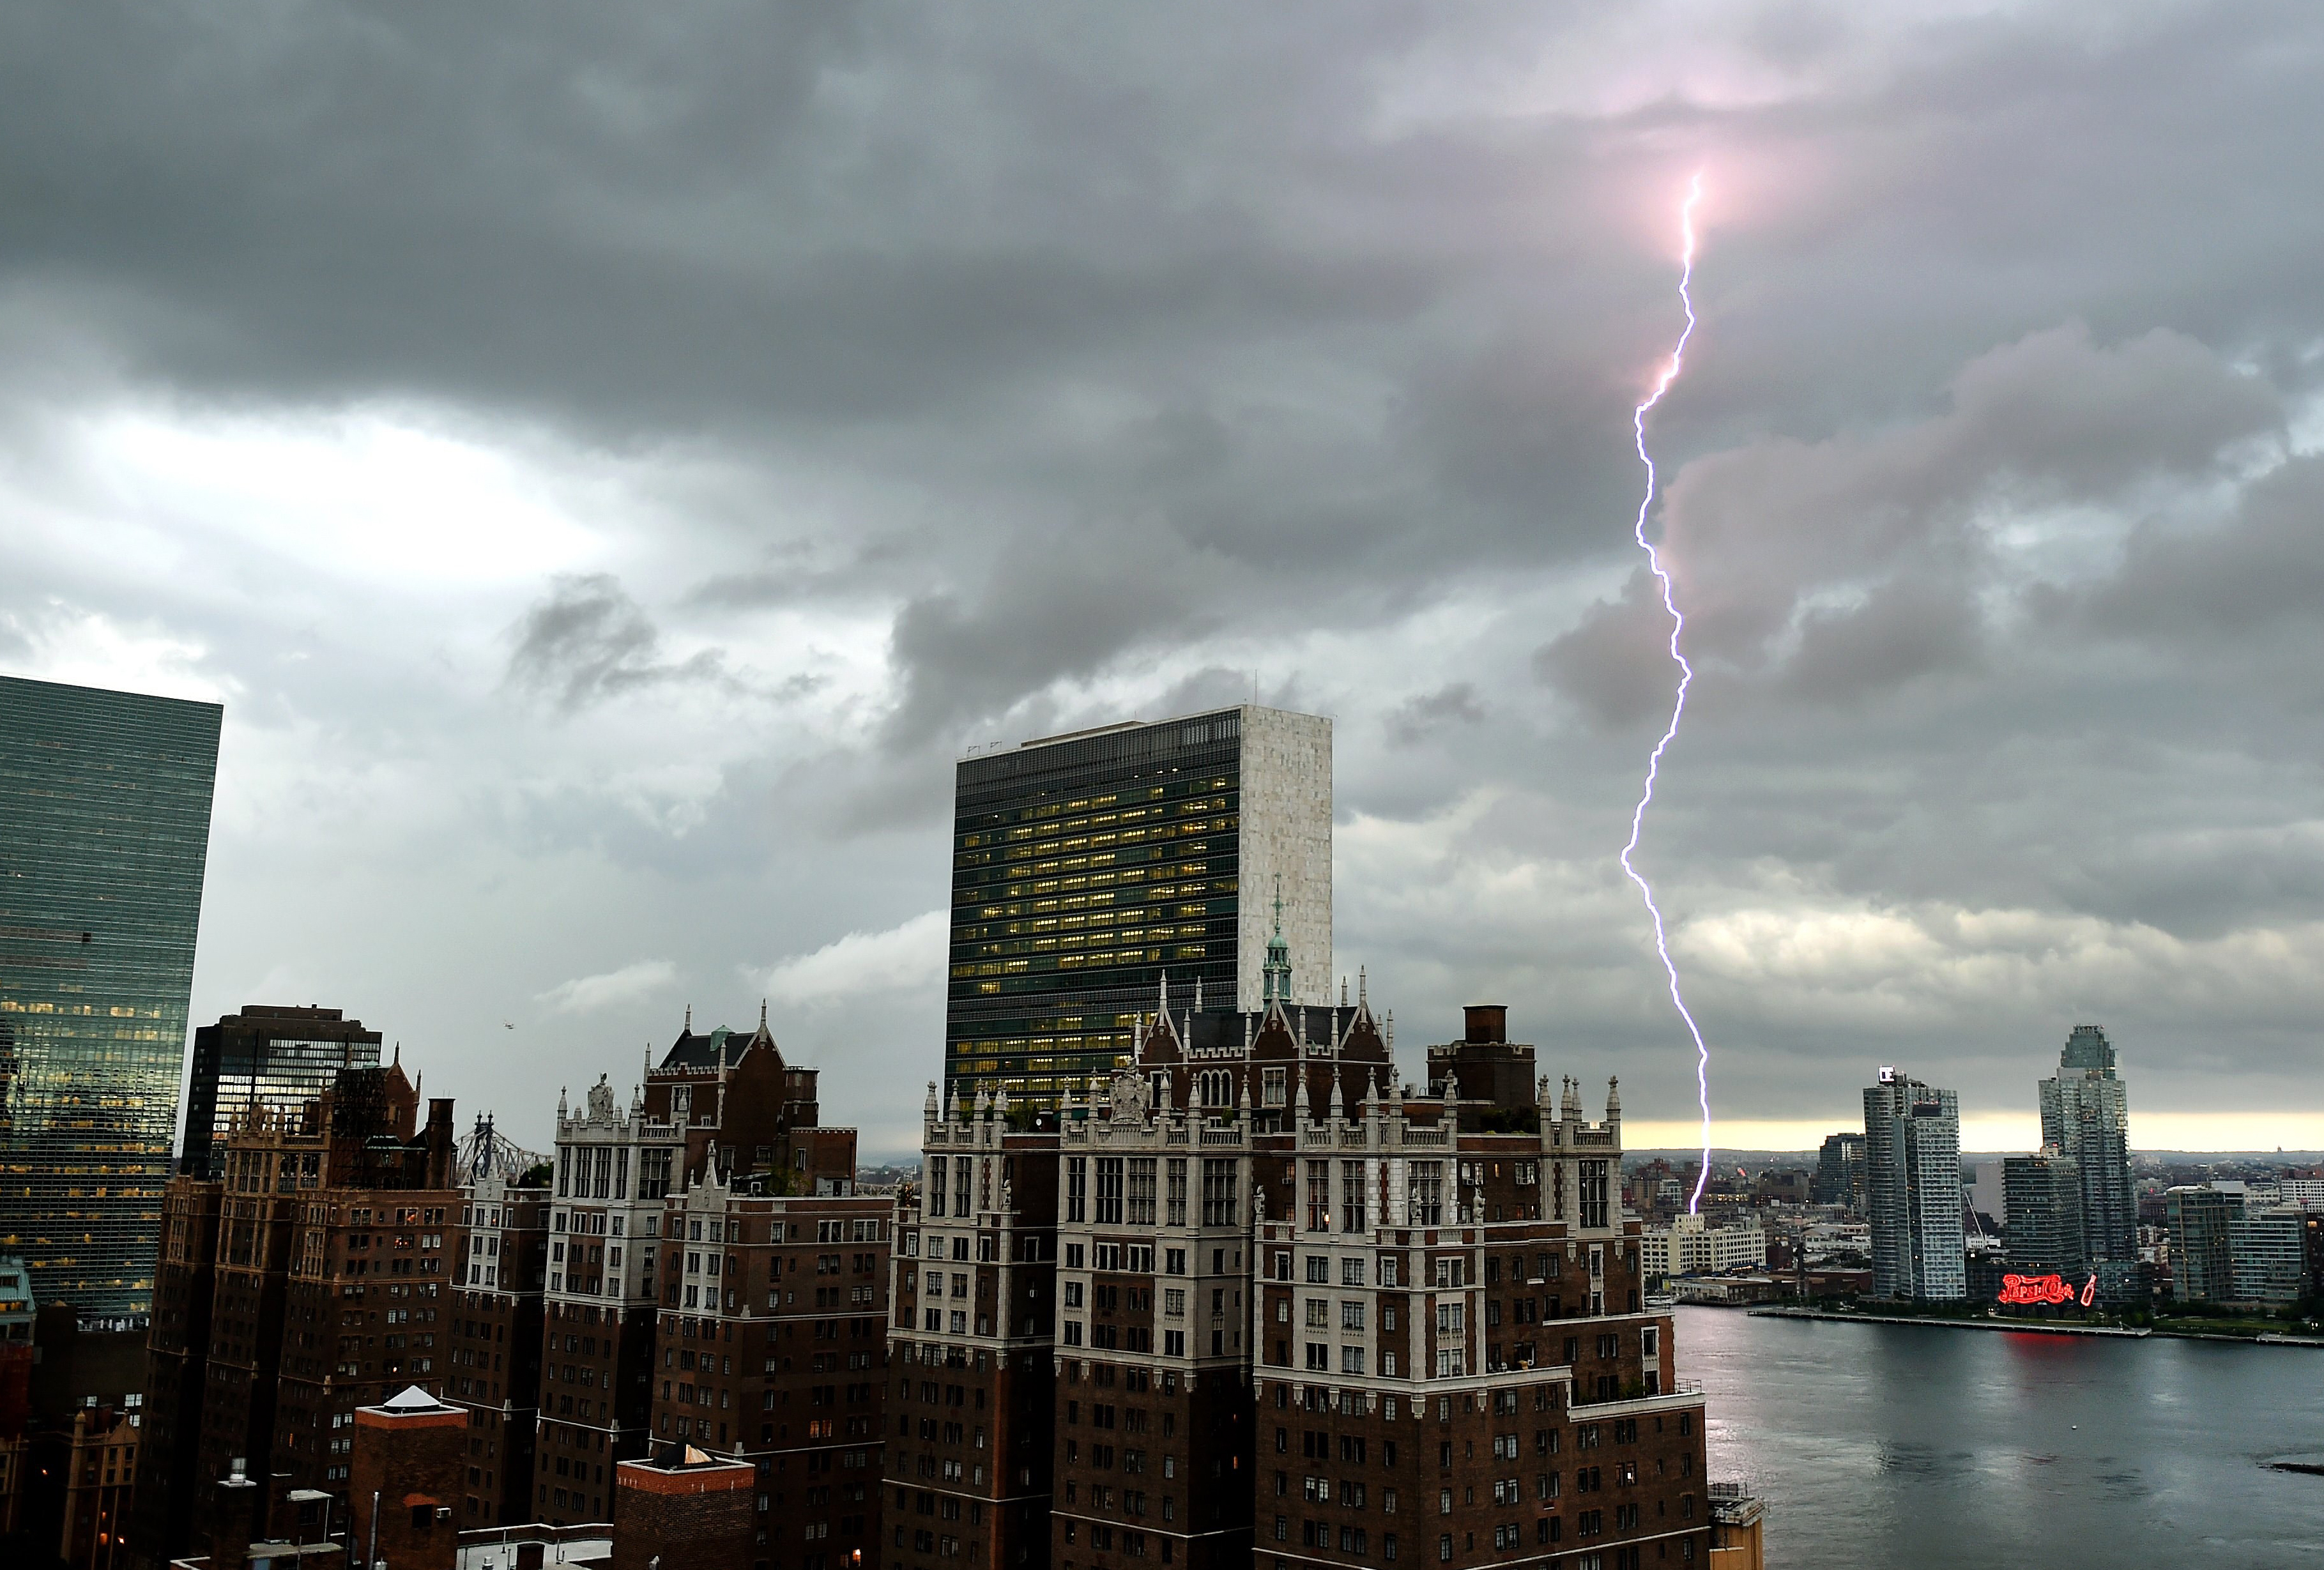 Lightning strikes over the East River